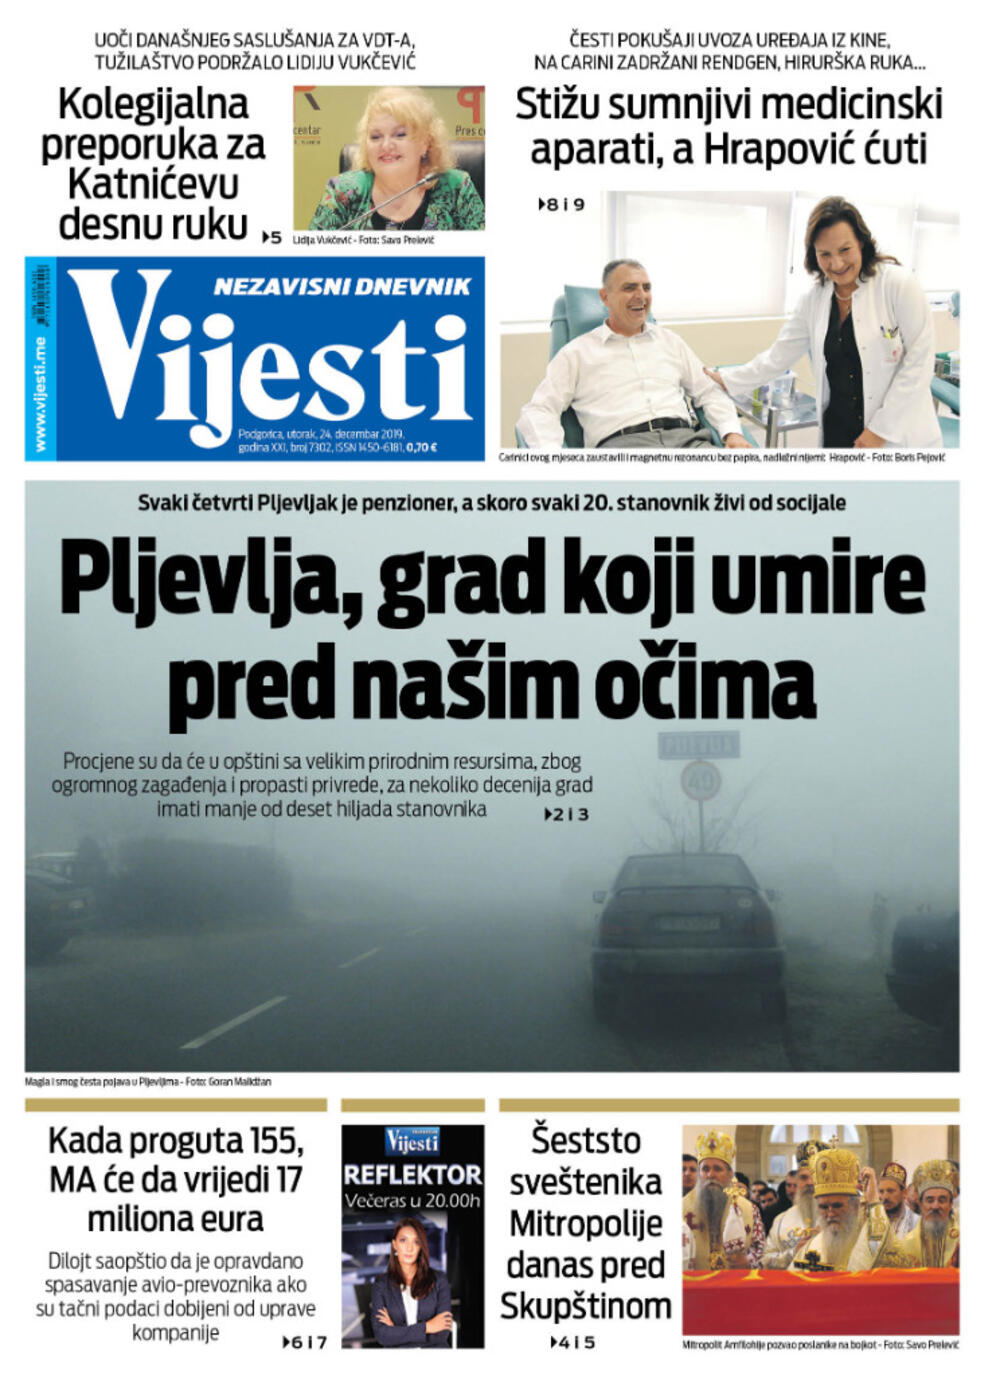 Naslovna strana "Vijesti" za 24. decembar